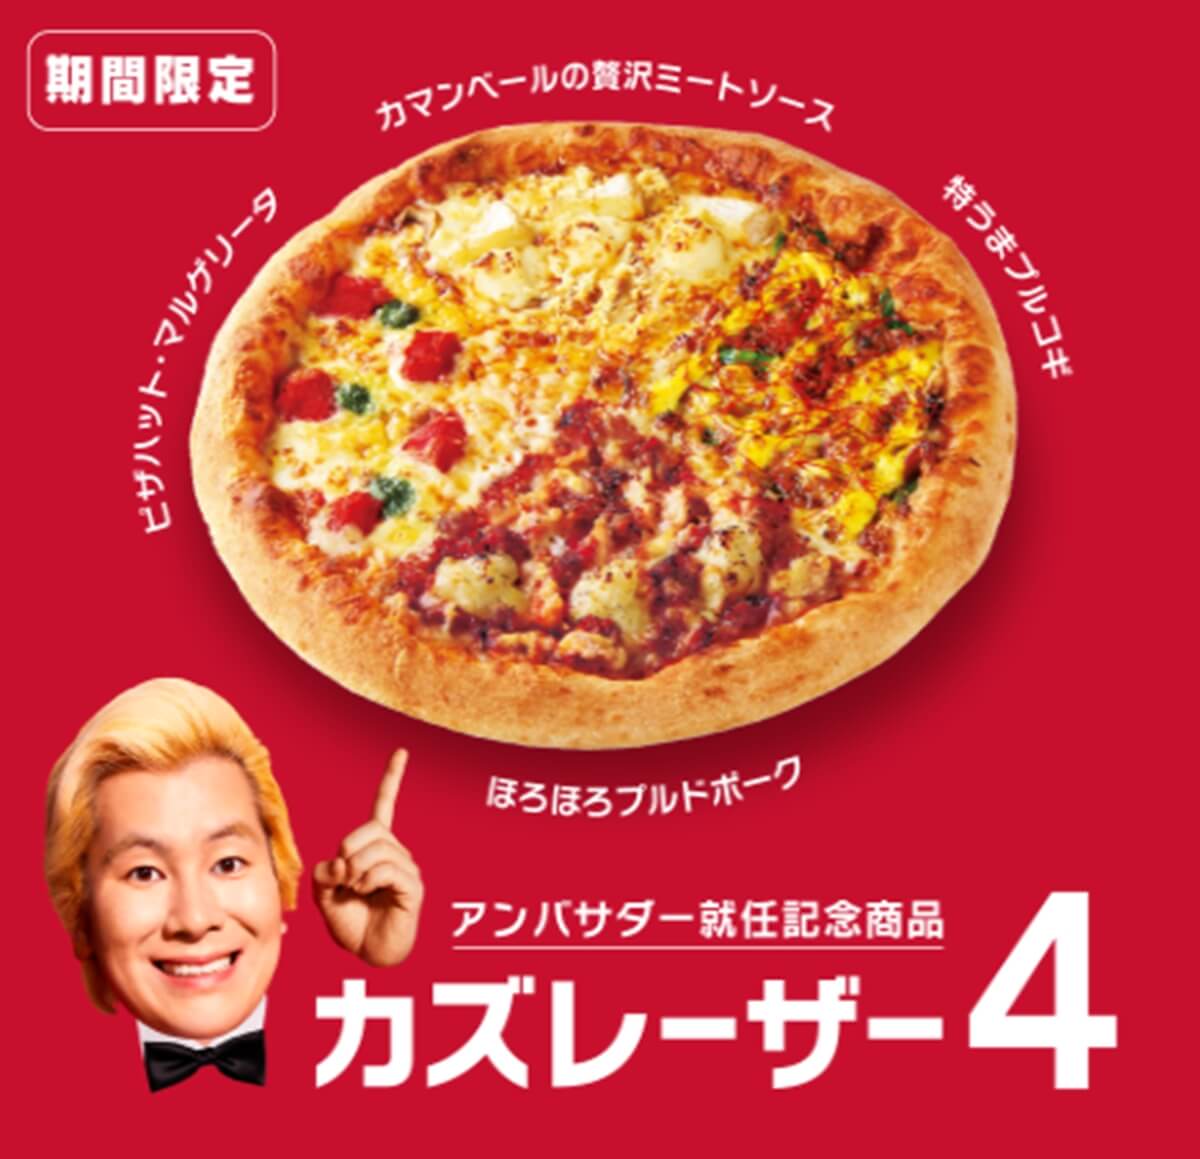 ピザハット カズレーザー4 の詳細と口コミ 感想 Pizza Information